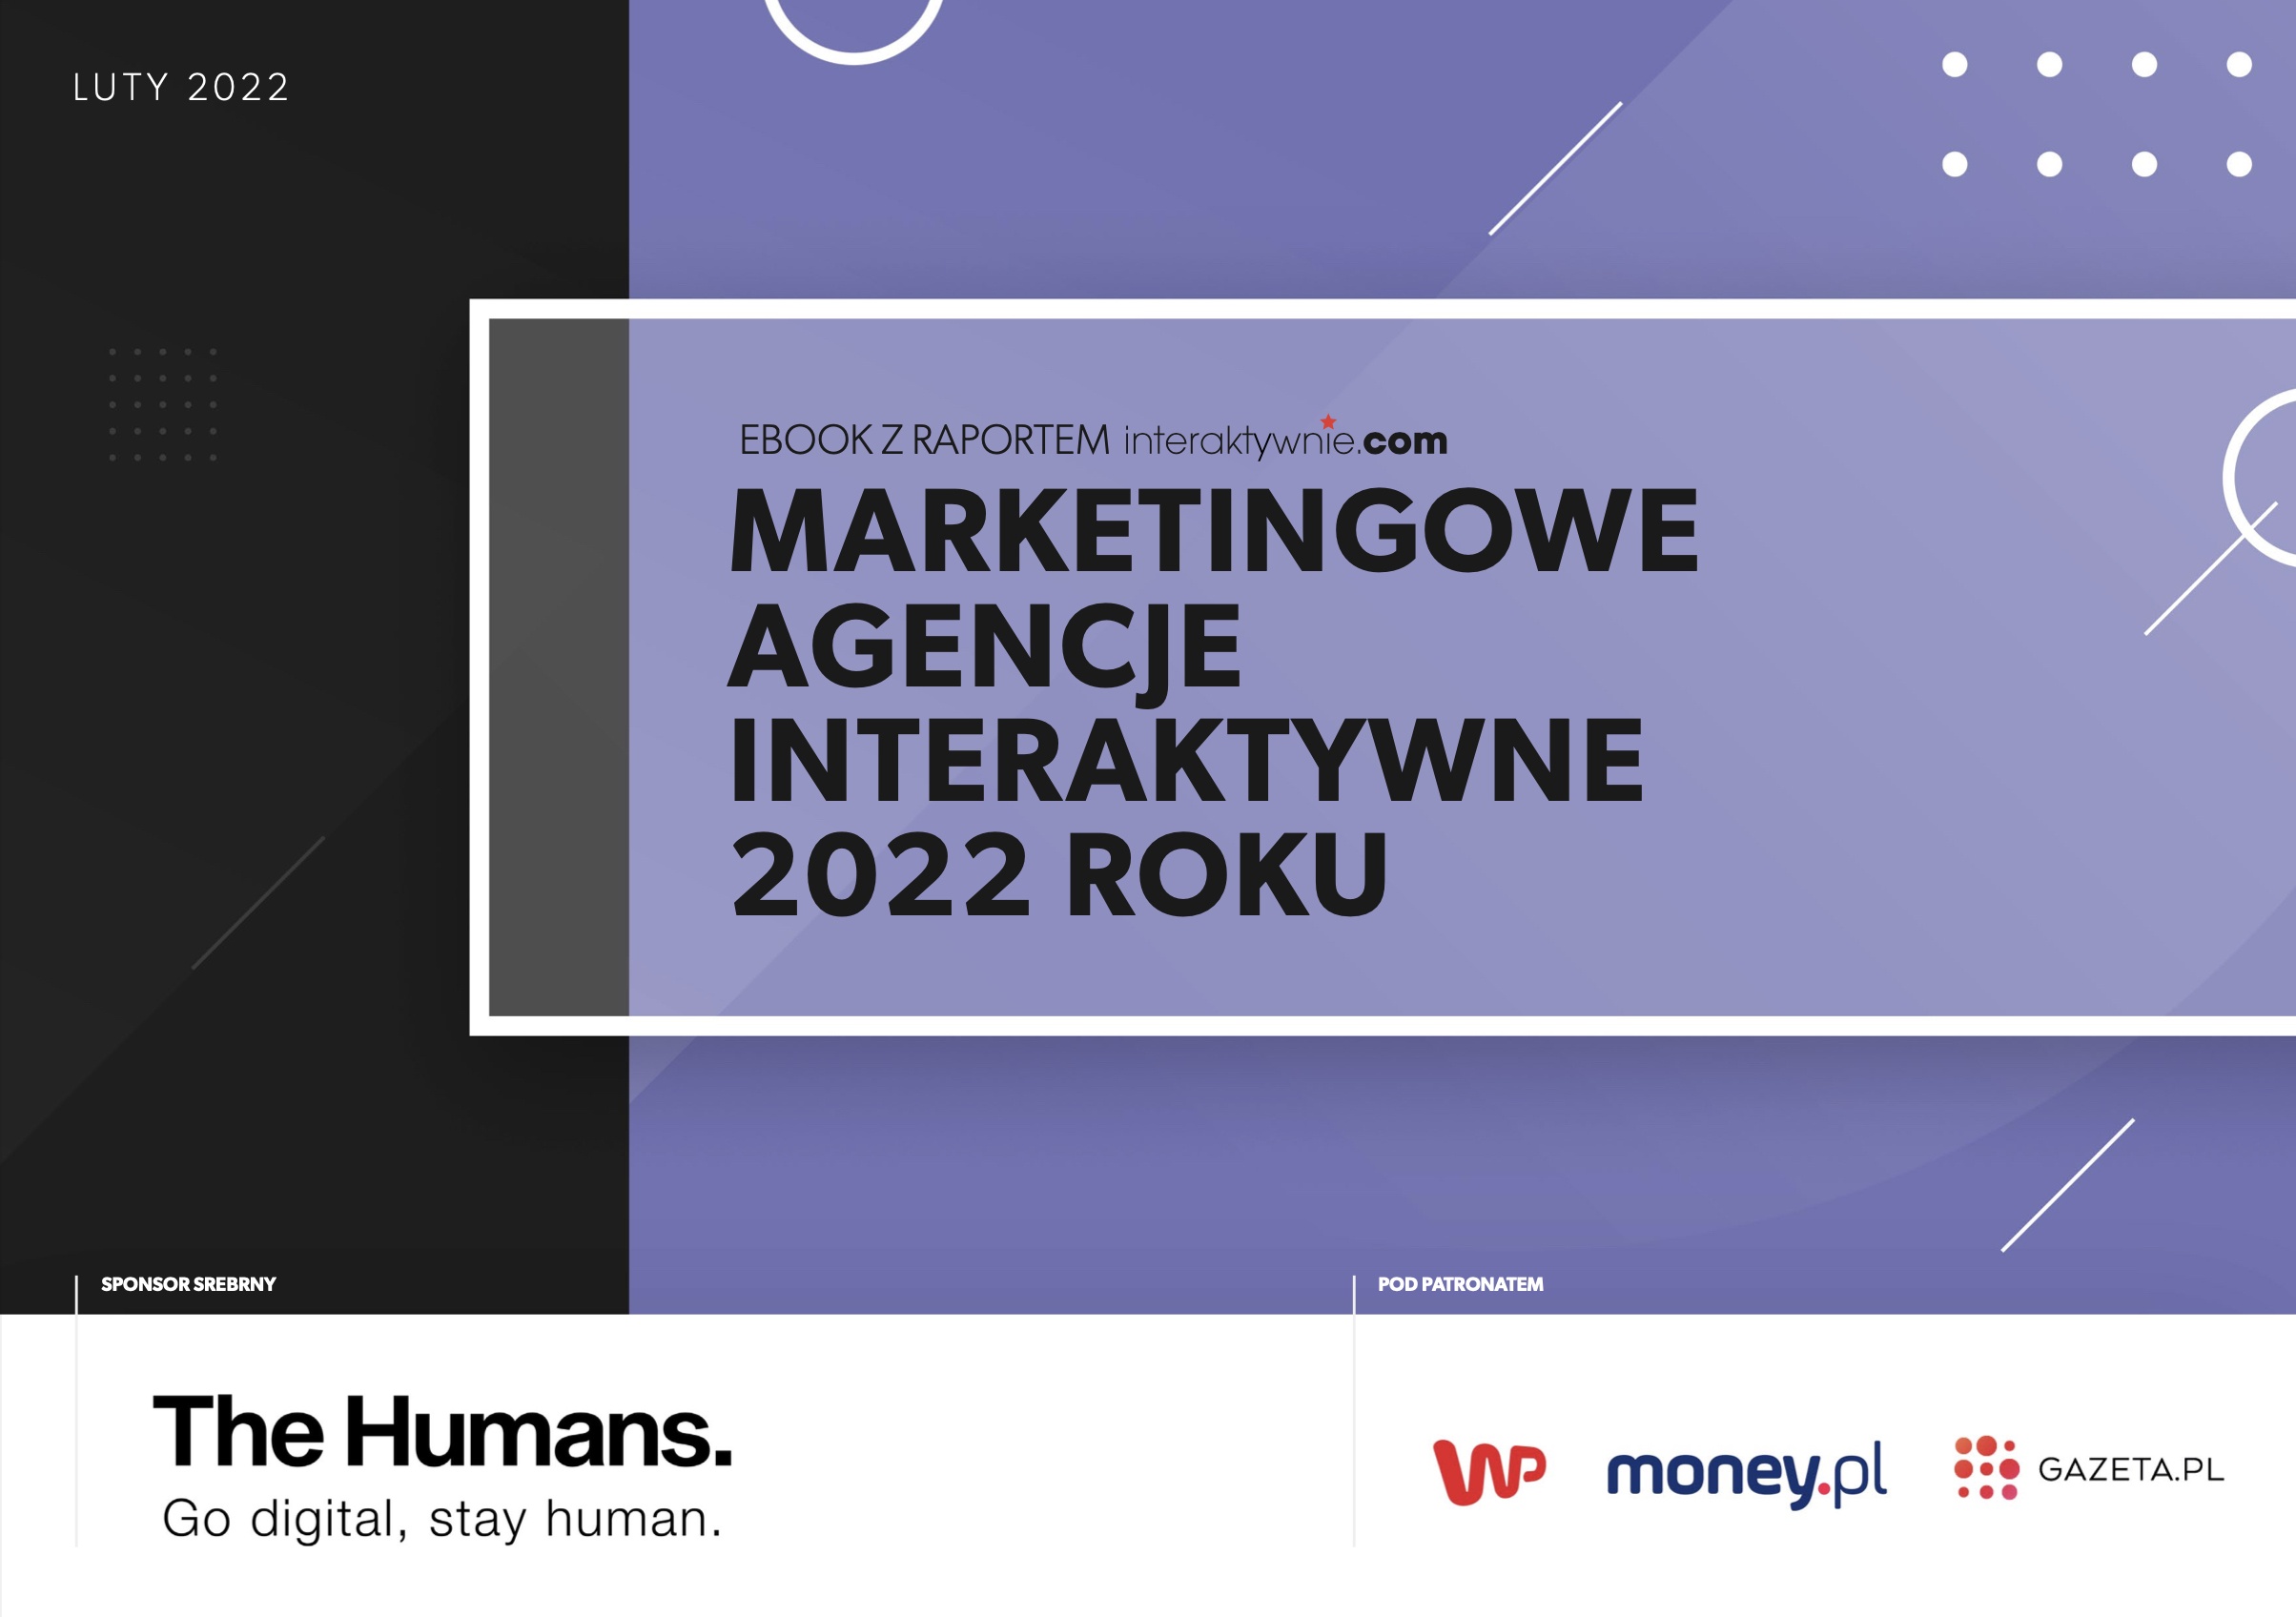 Ranking agencji marketingowych 2022 roku